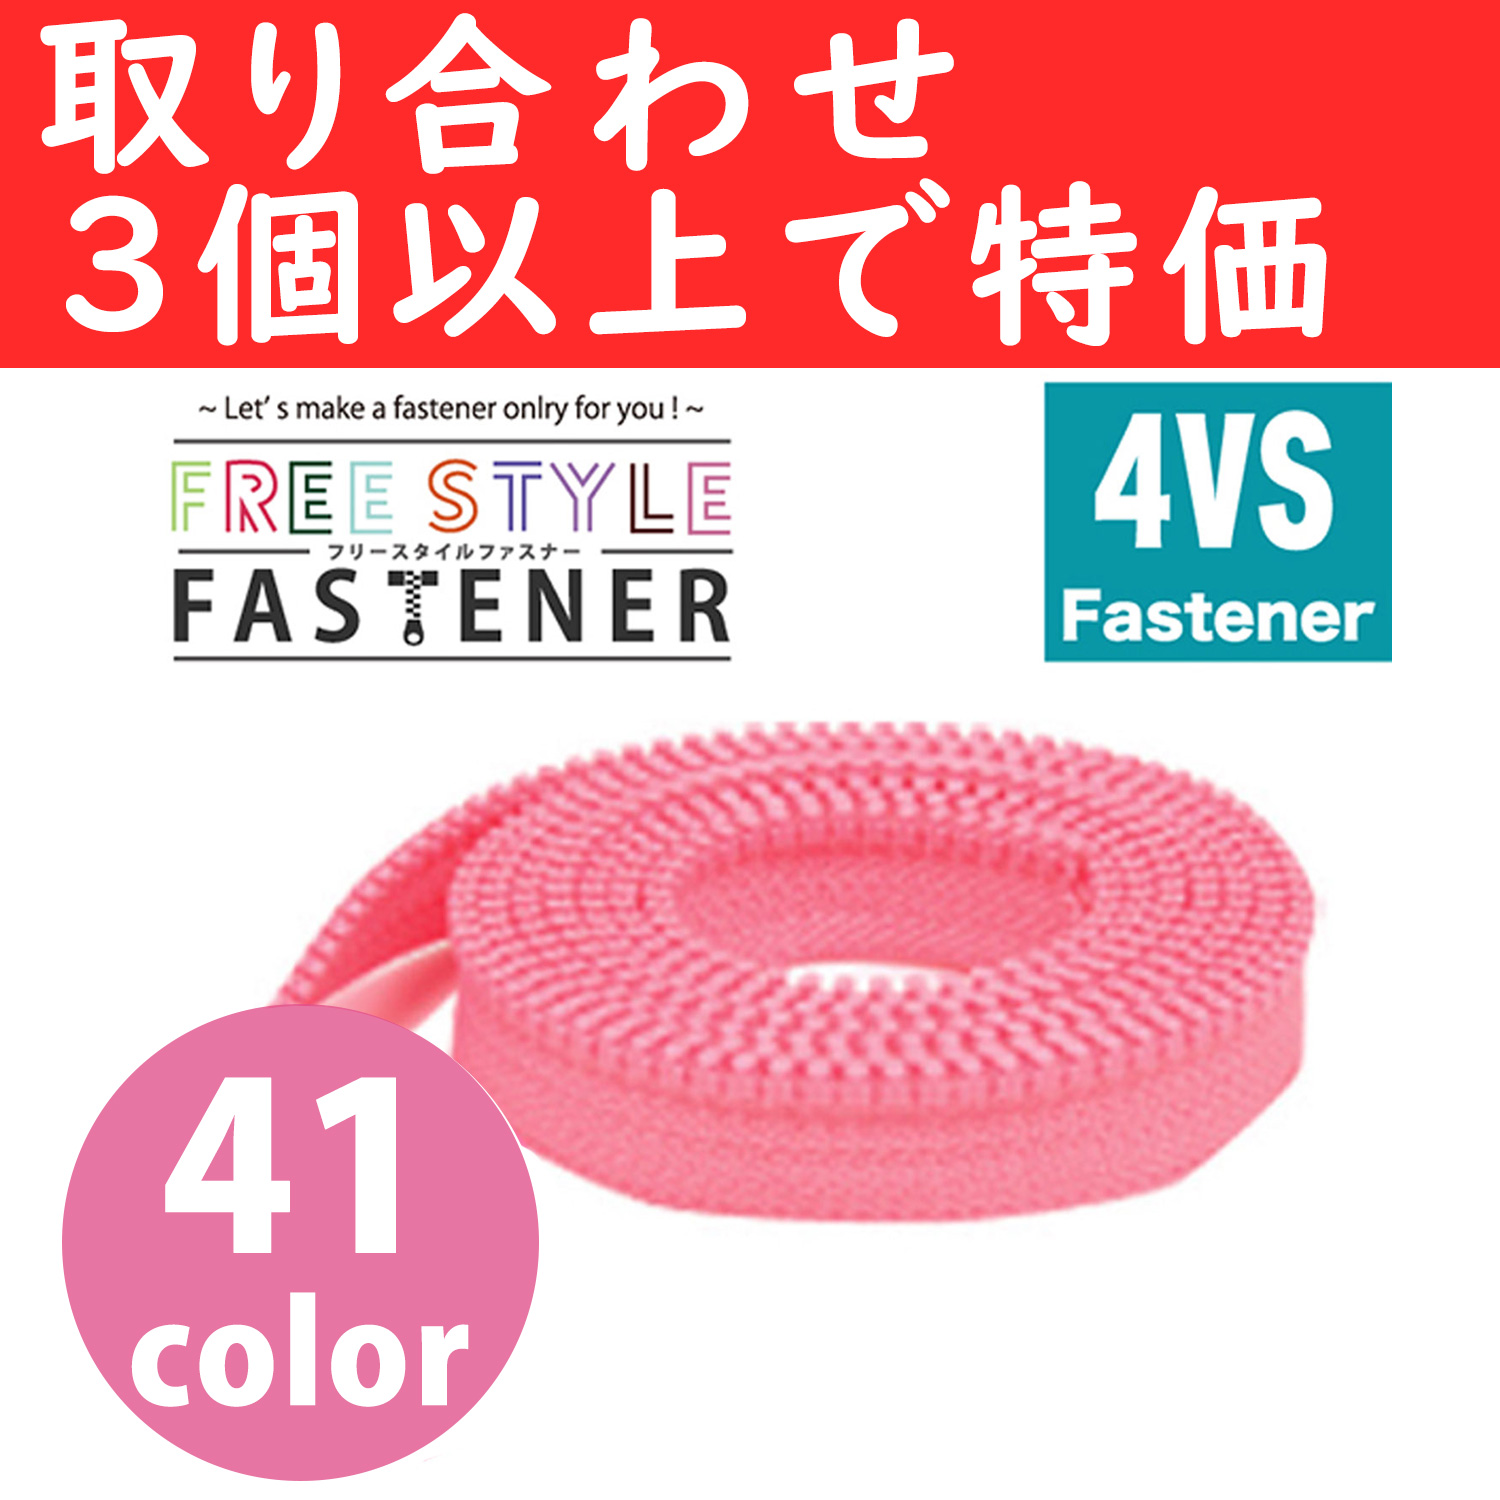 【●】FS4VS-OVER3 フリースタイルファスナー 1.2m巻 色取り合せ3袋以上で FSRSスライダープレゼント (袋)